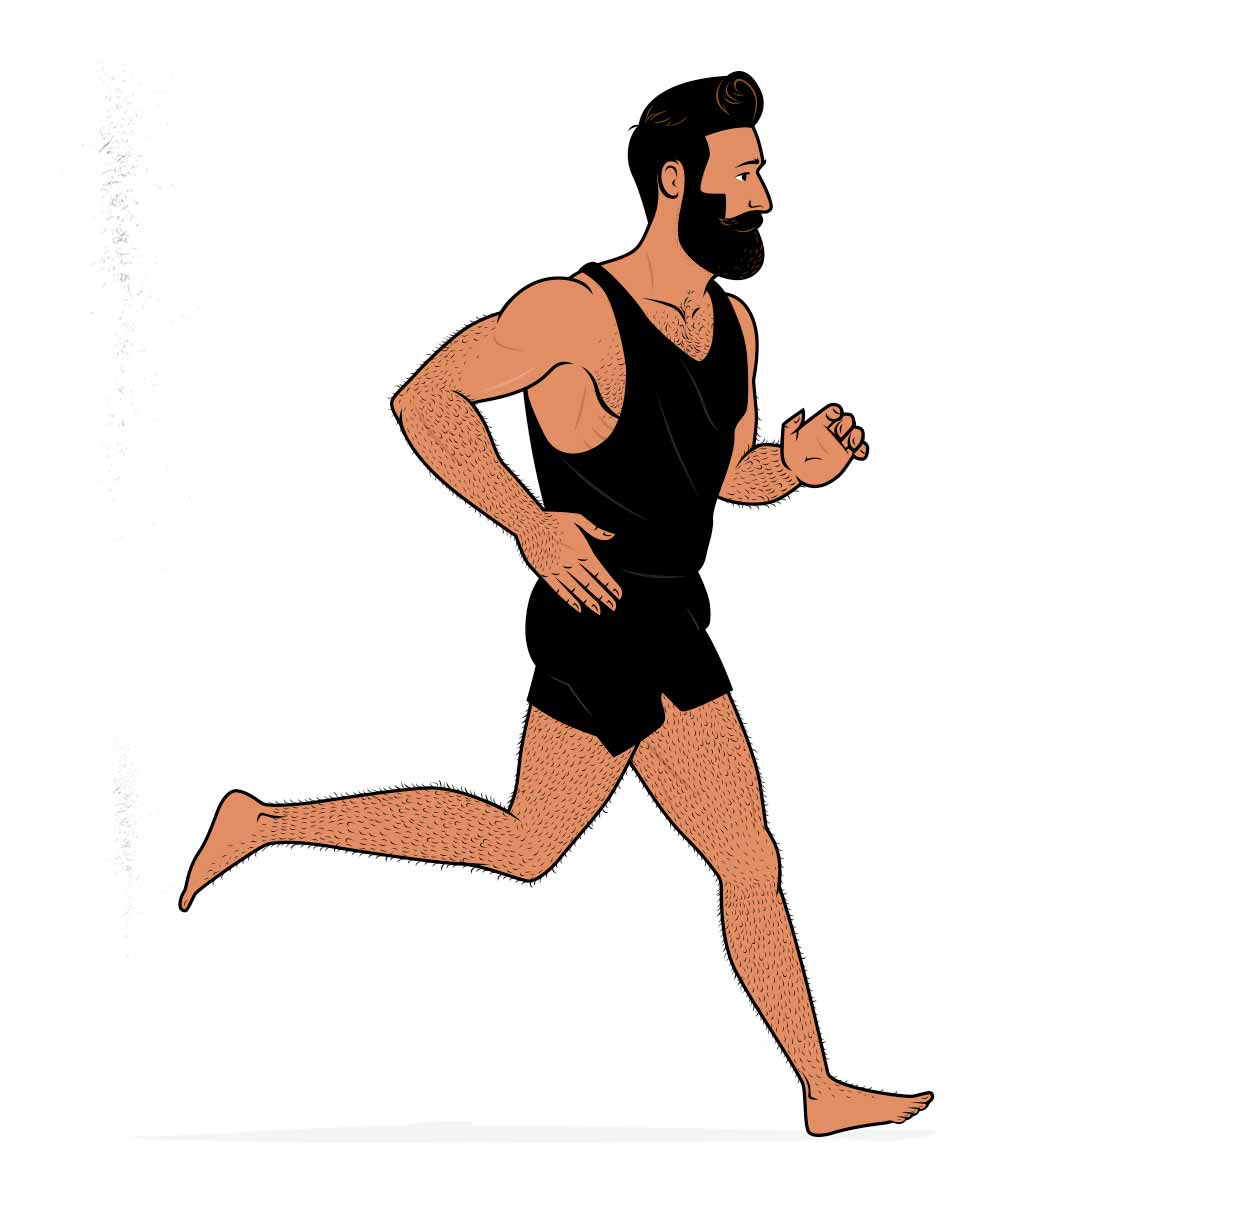 Ilustración de un hombre muscular trotando.